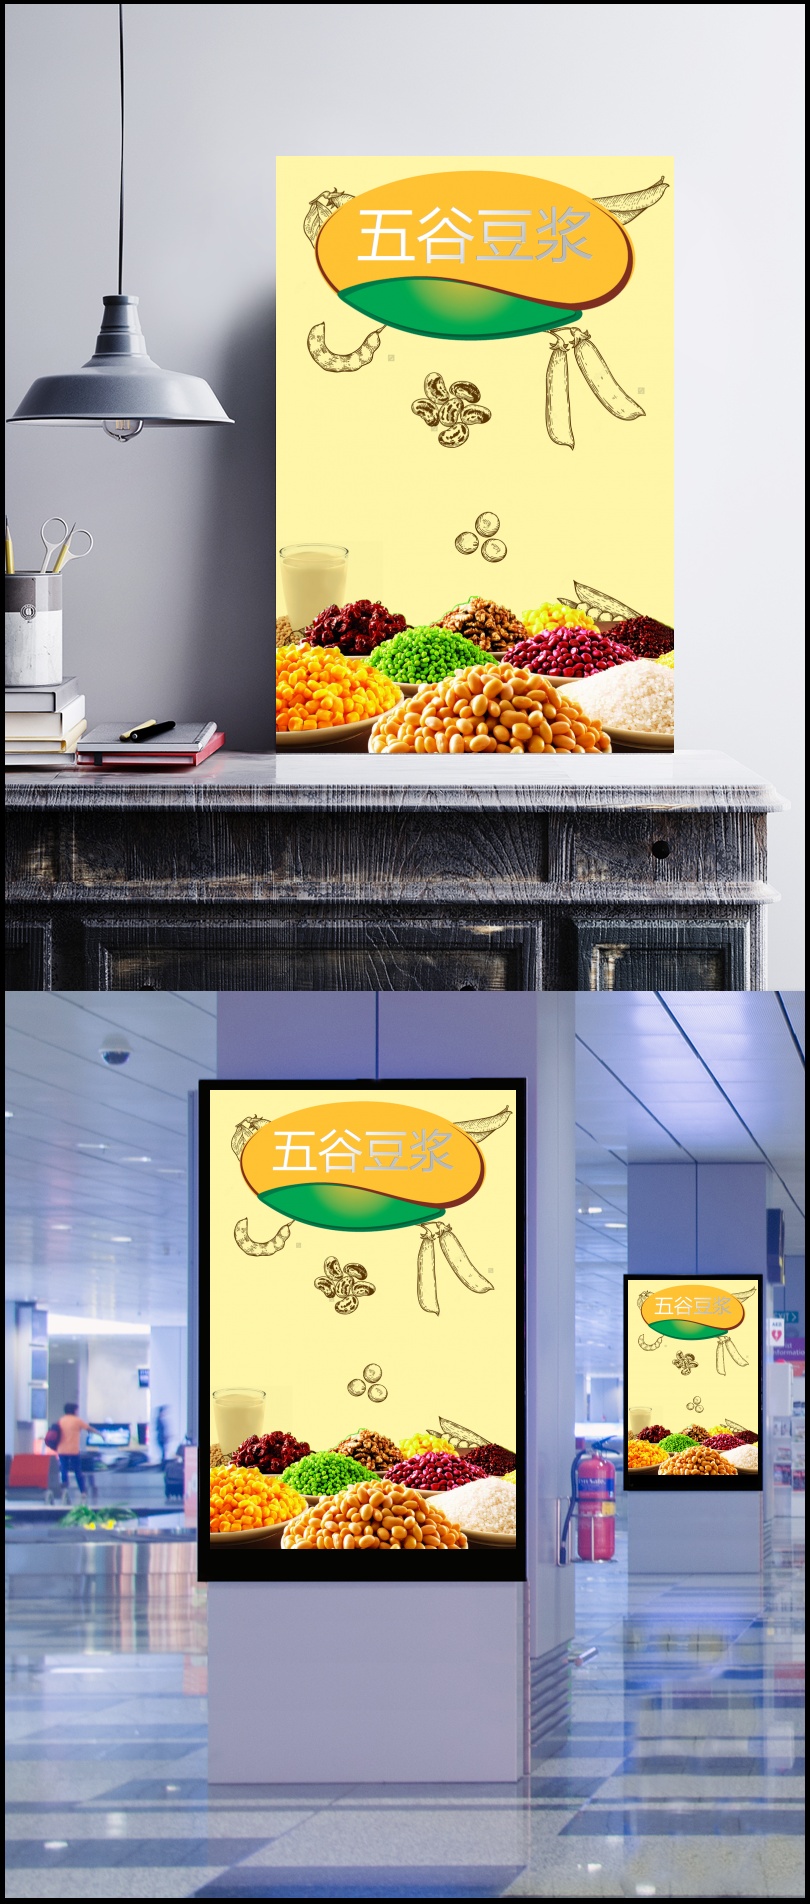 浅黄健康保健五谷豆浆饮品豆制品食品宣传